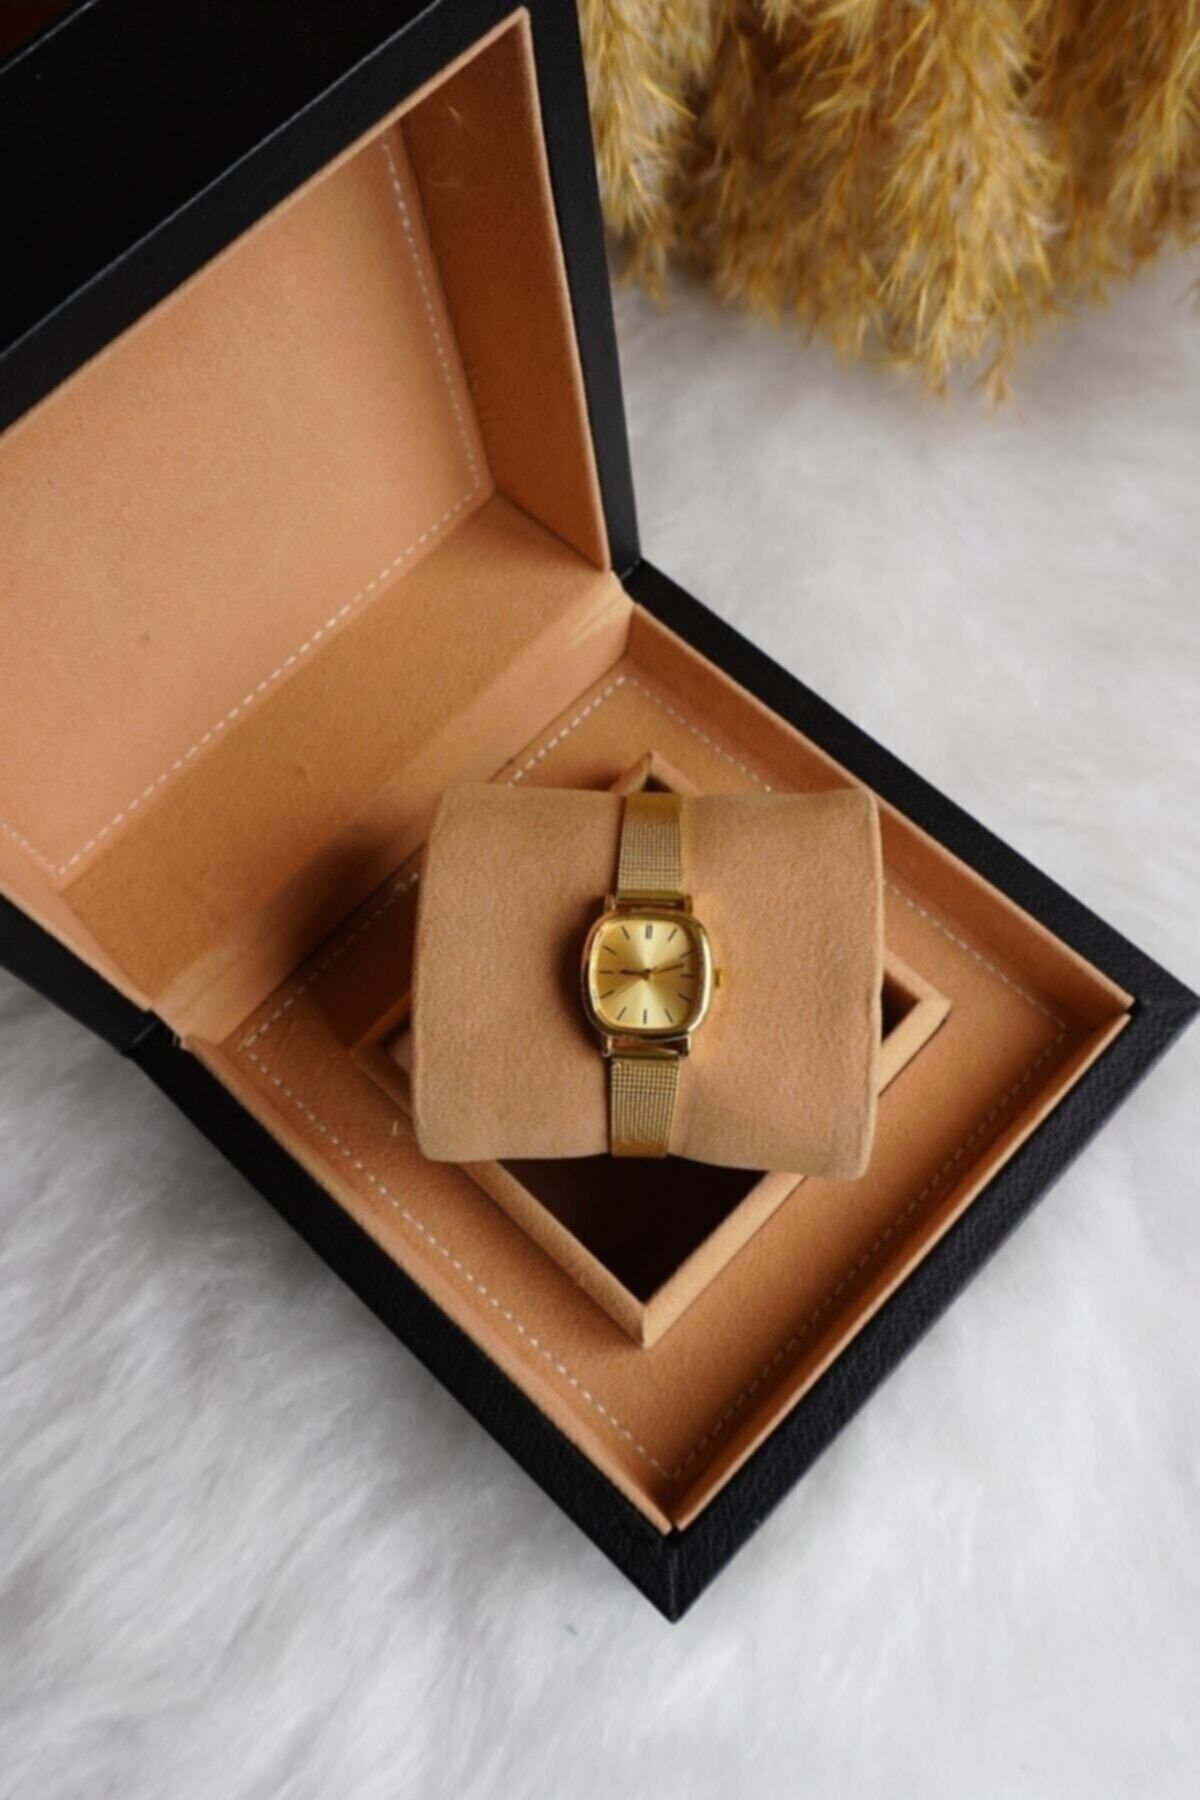 Ricardo Kadın Kol Saati Minimal Gold Hasır Çelik Kordon Kol Saati